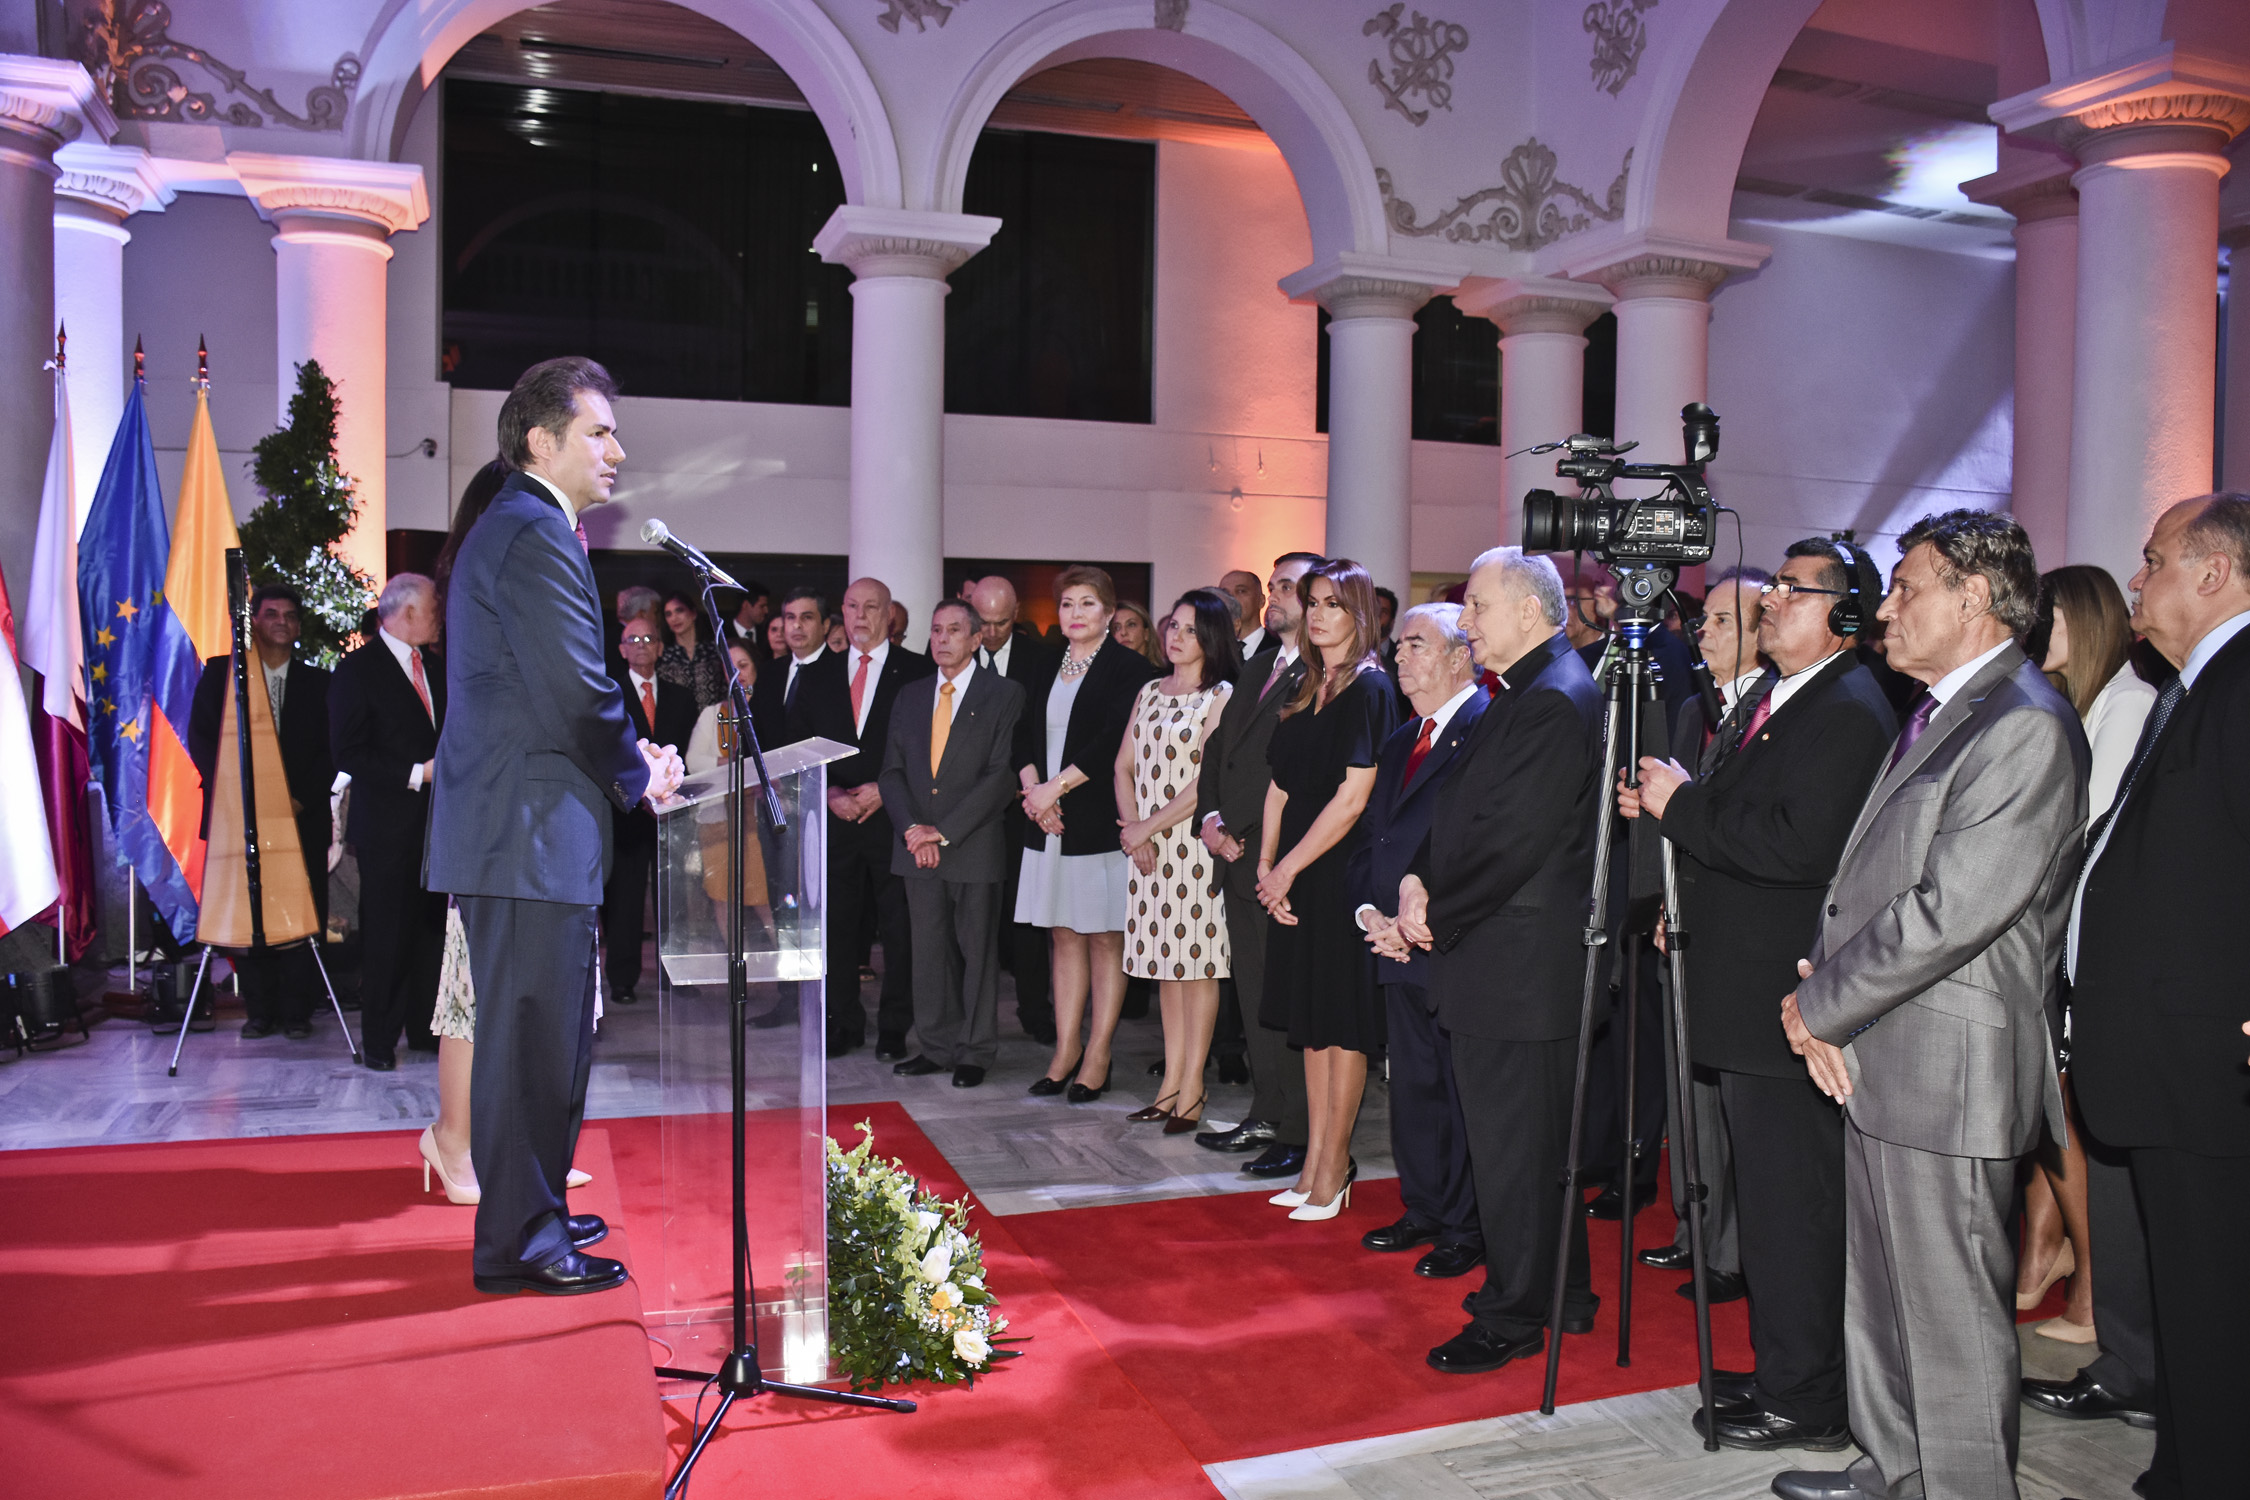 El Ministro Castiglioni recibió el saludo del Cuerpo Diplomático y Consular acreditado